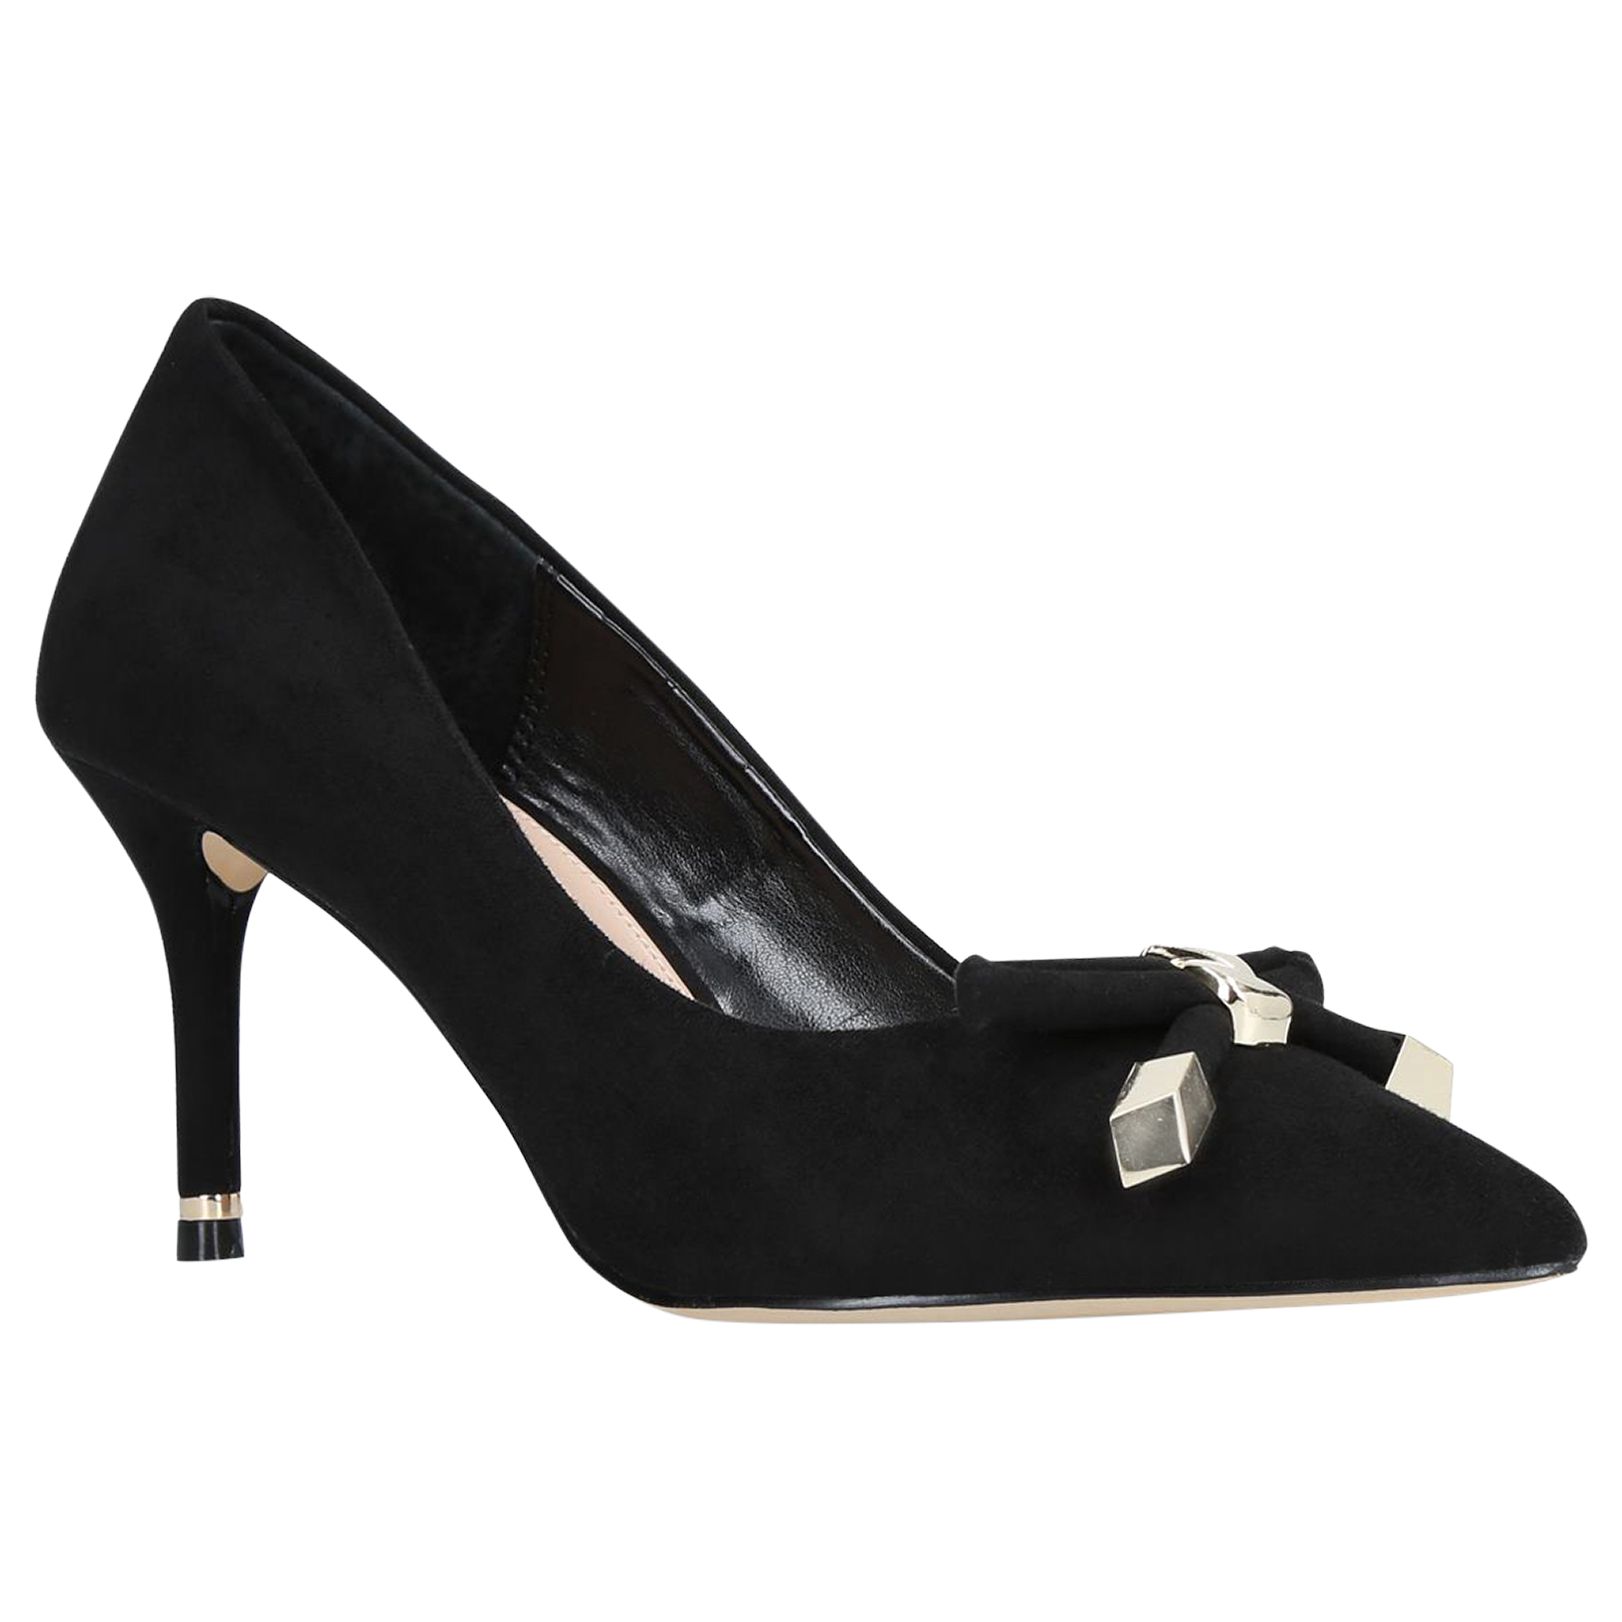 Carvela Kupid Bow Stiletto Heel Court Shoes, Black, 8